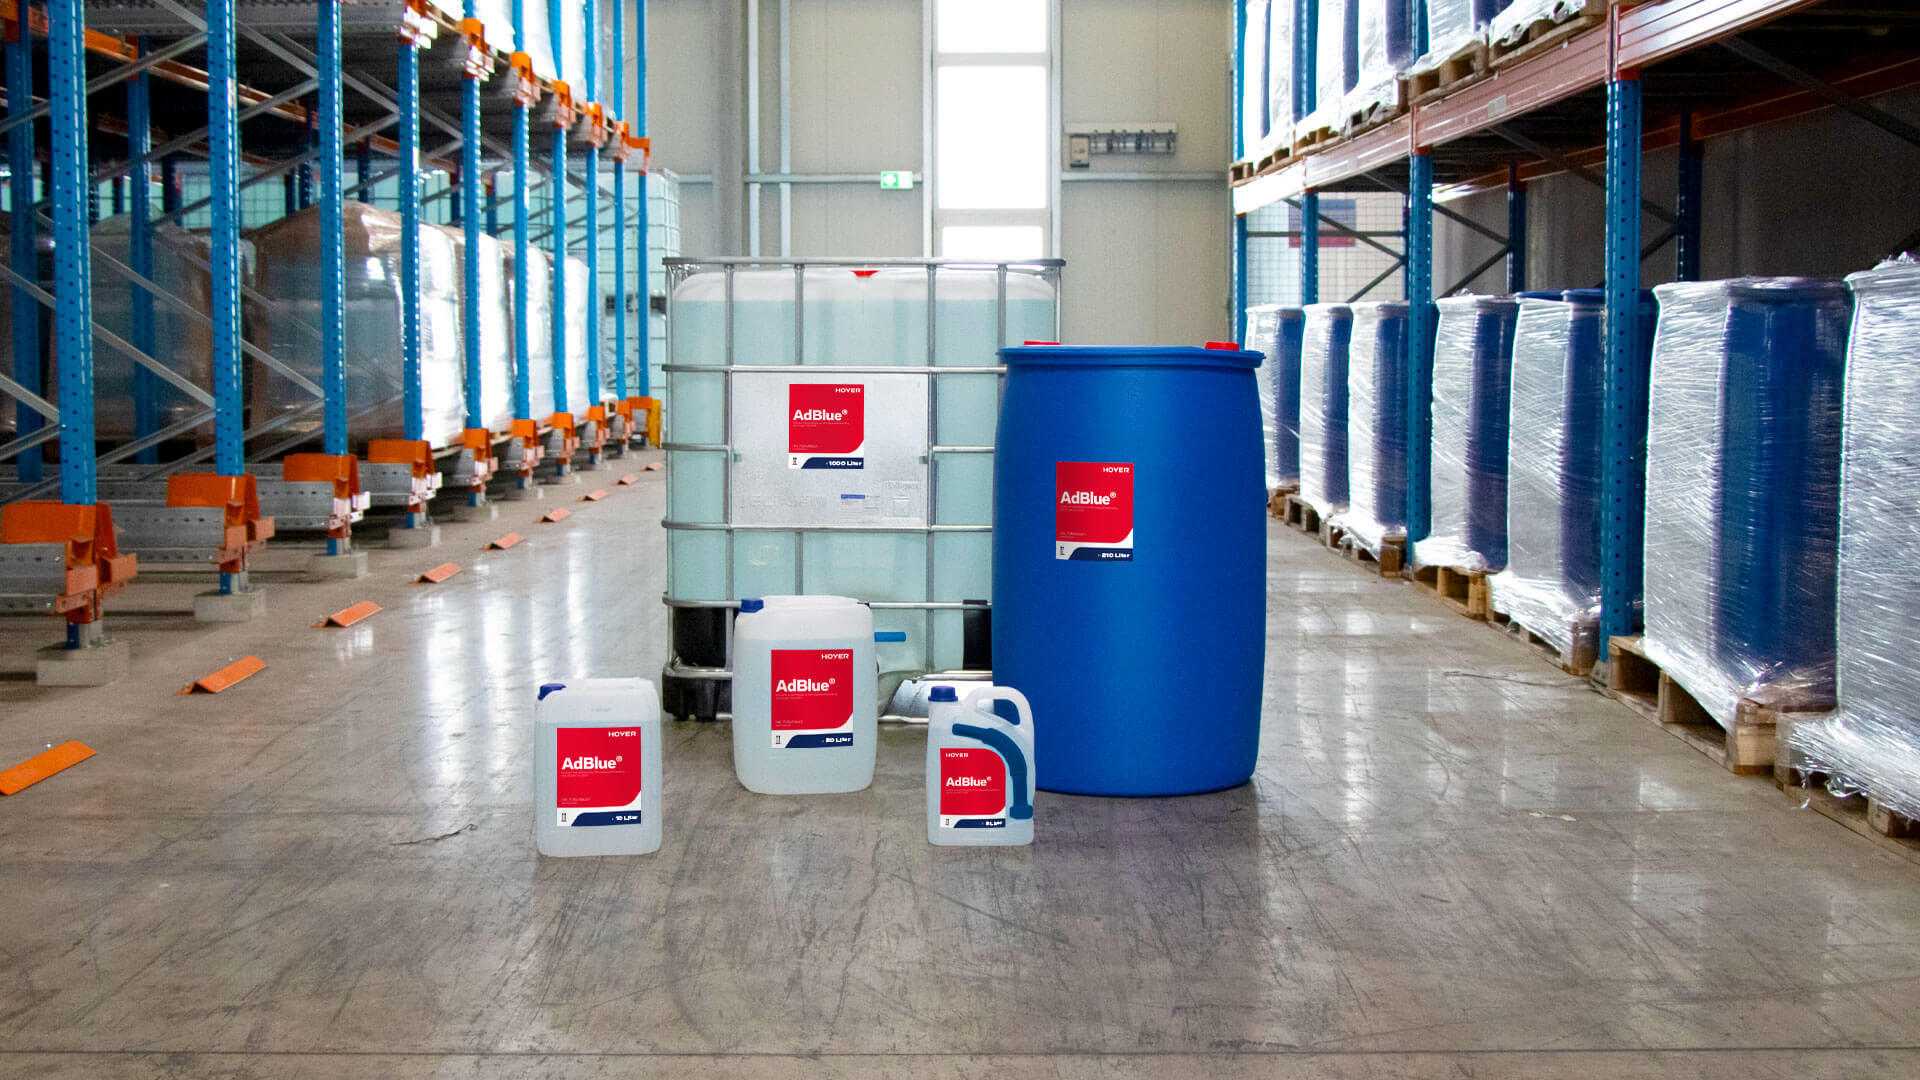 AdBlue® 30 Stück 10 Liter Kanister von Hoyer mit Ausgießer